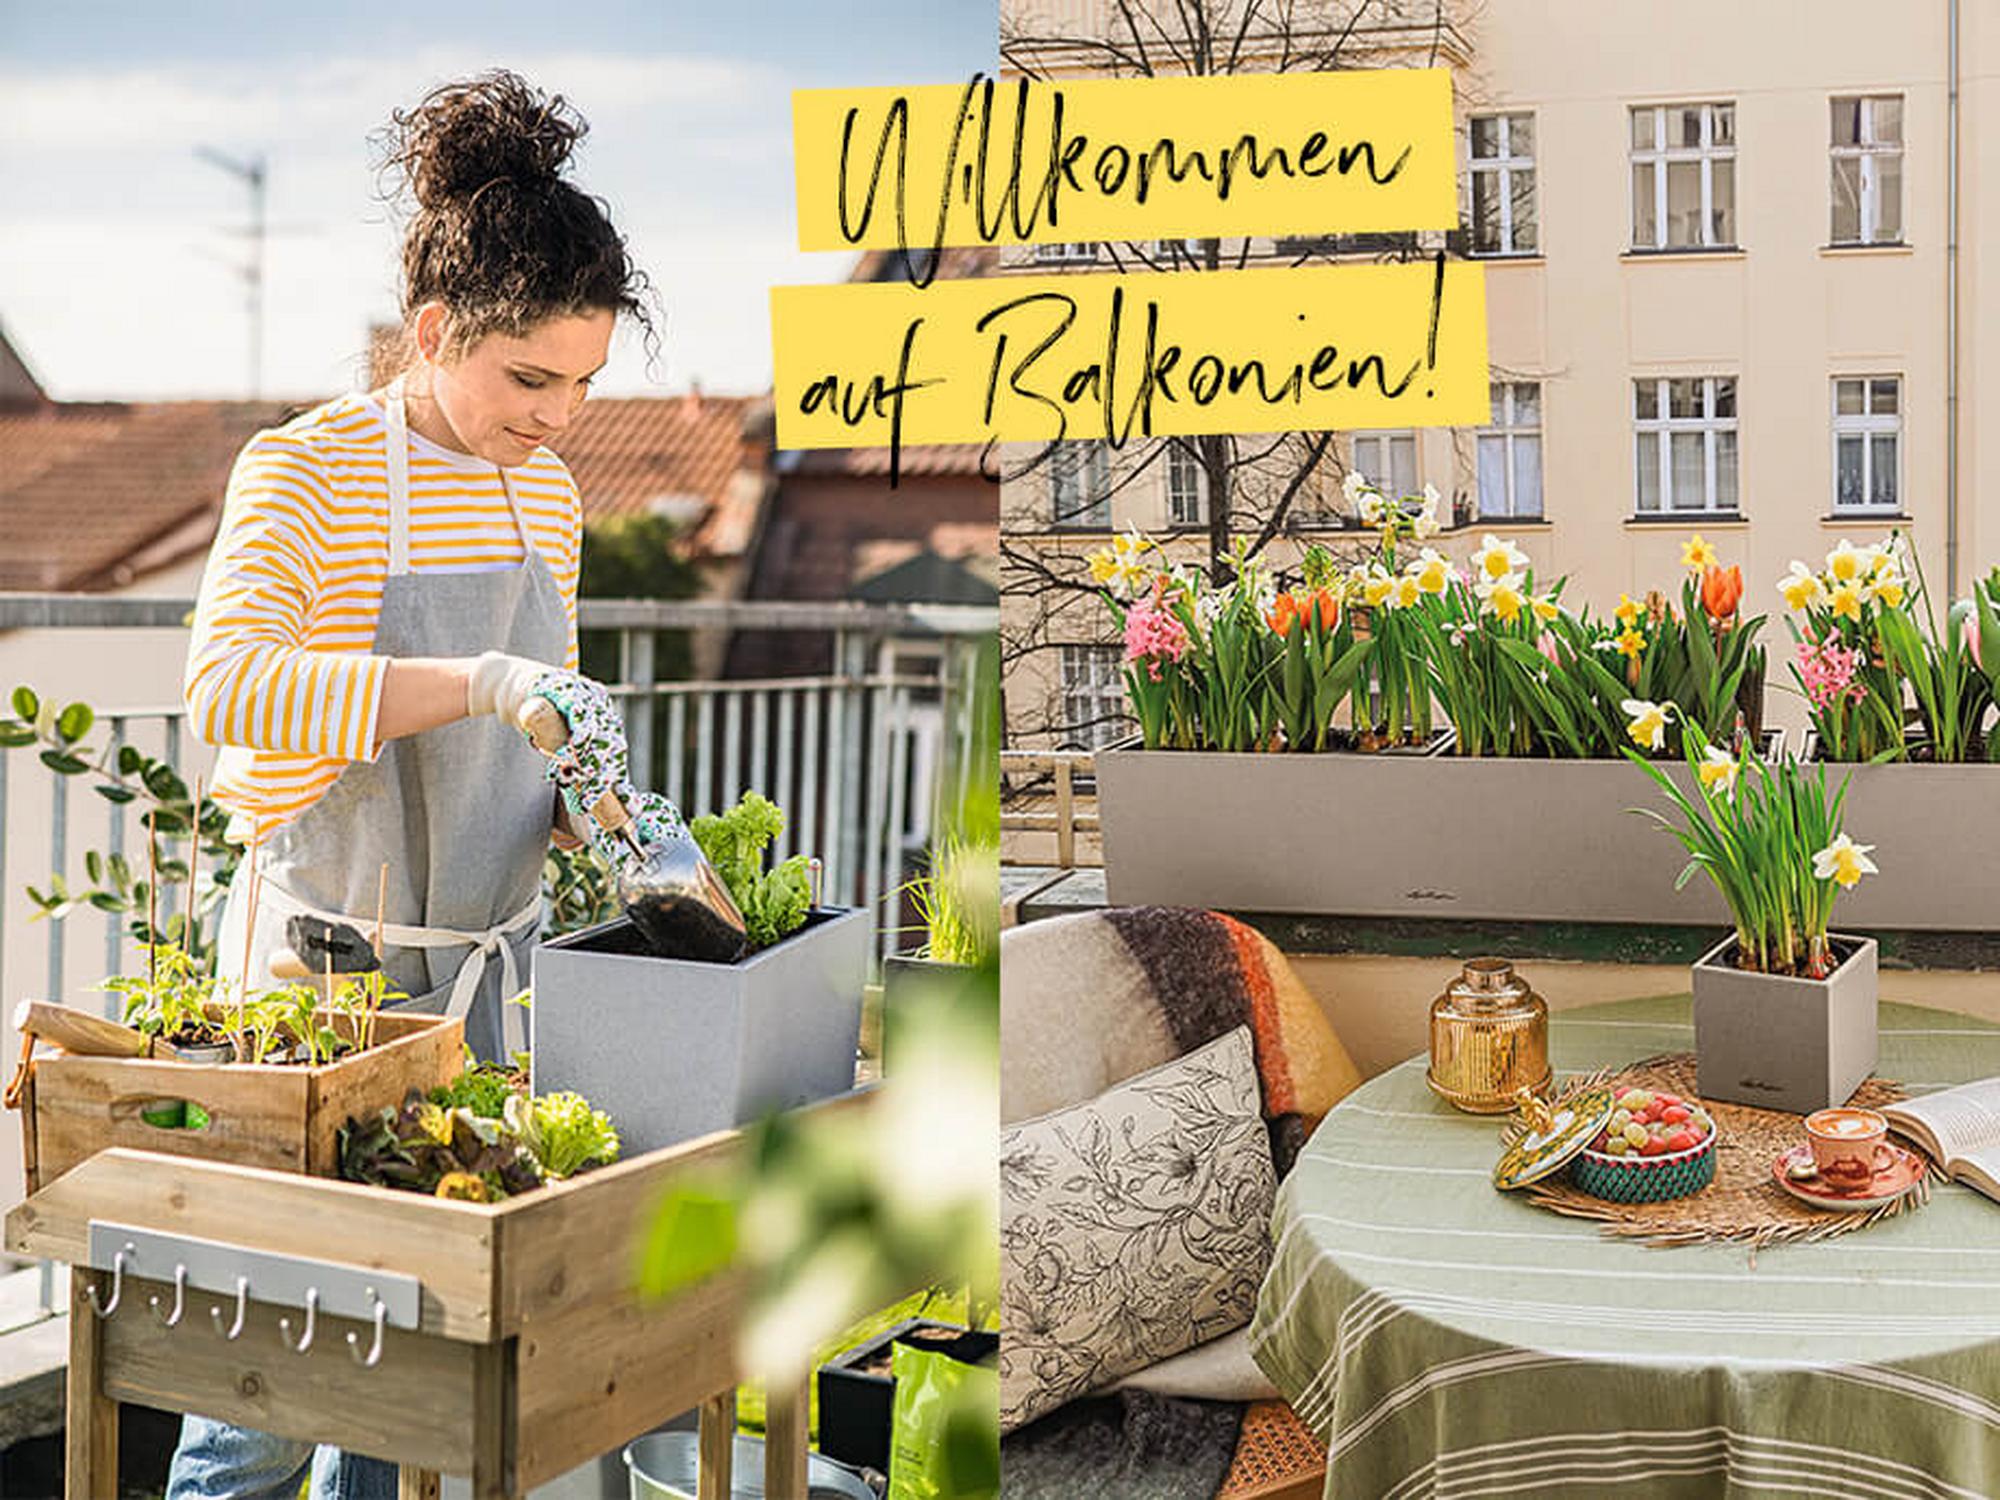 Willkommen auf Balkonien!
15% Rabatt auf Blumenkästen